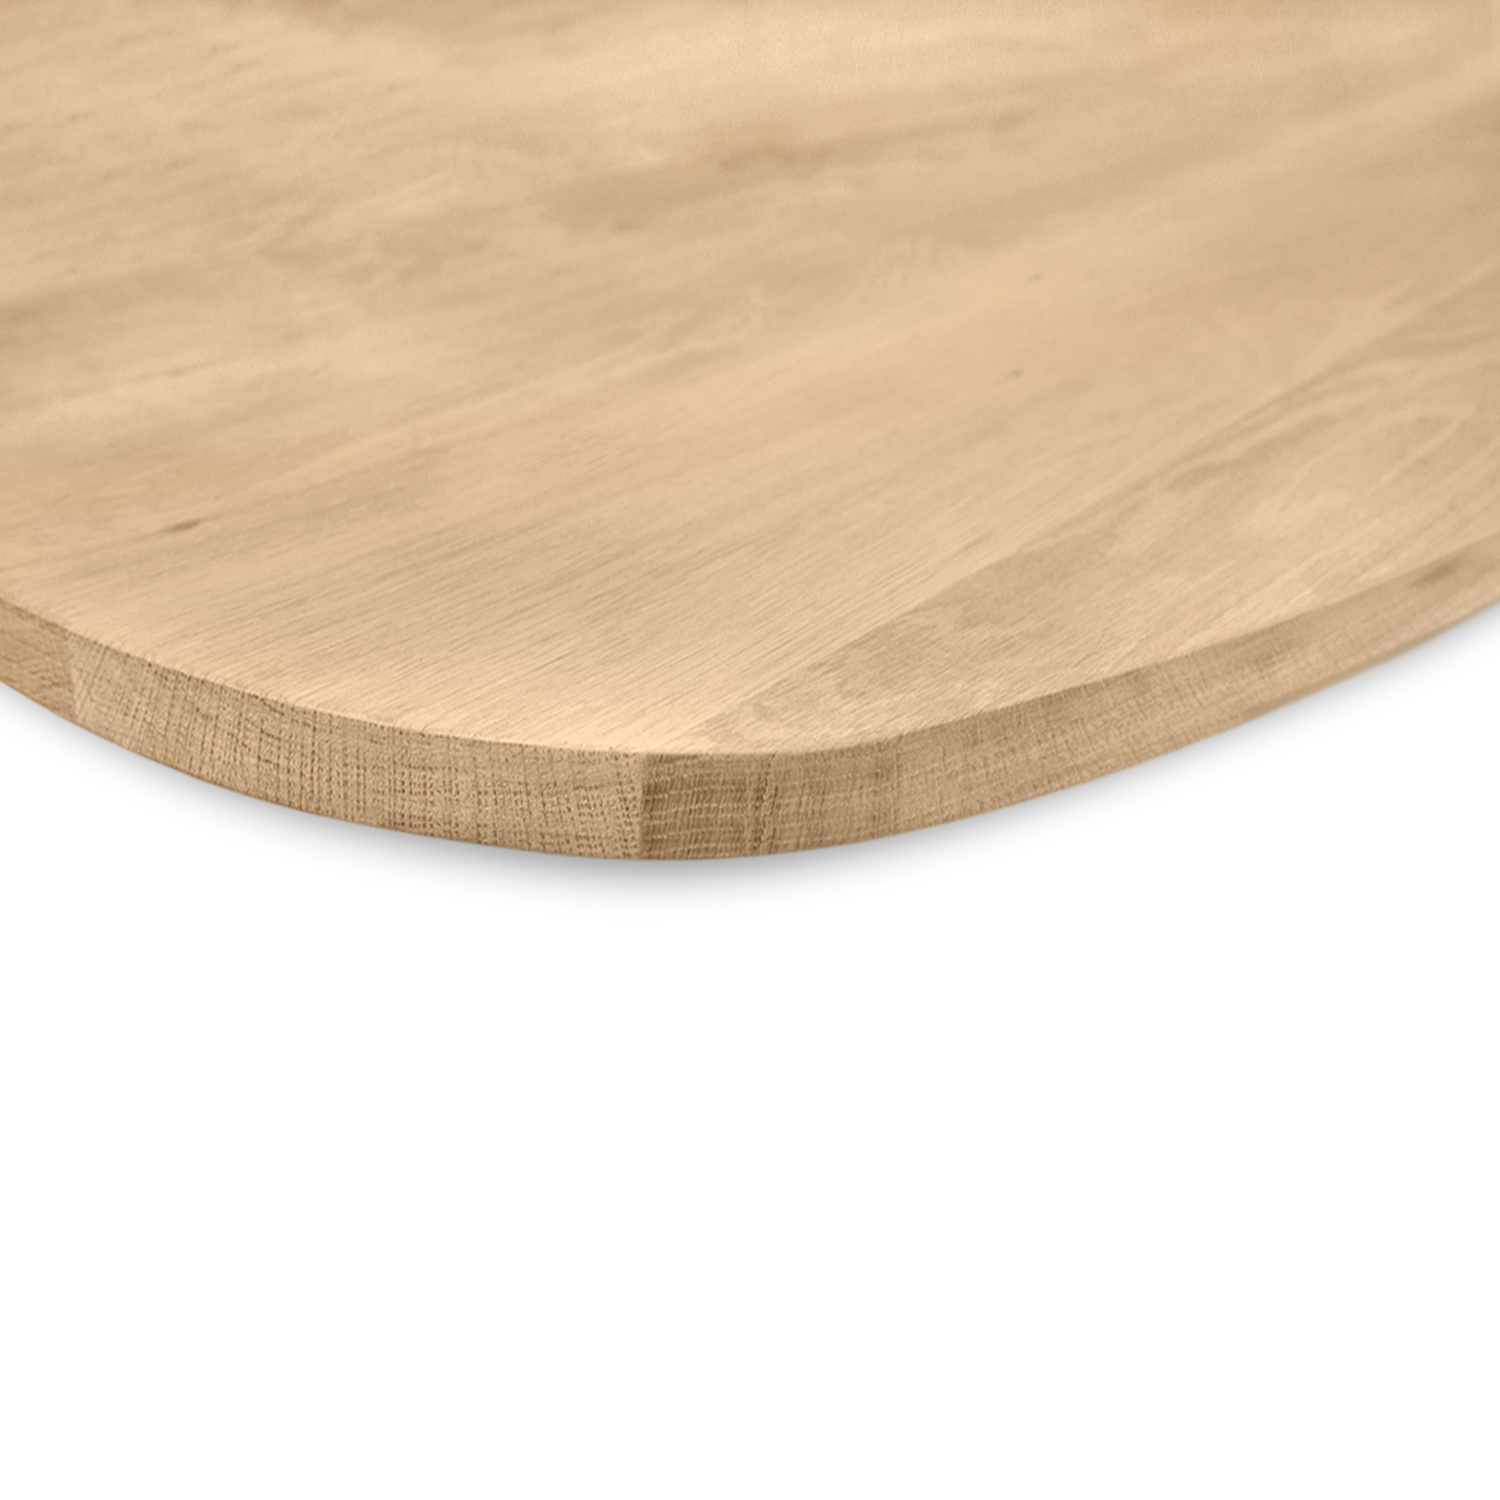  Deens ovaal eiken tafelblad - 4 cm dik (1-laag) - Diverse afmetingen - extra rustiek Europees eikenhout - met extra brede lamellen (circa 14-20 cm) - verlijmd kd 8-12%